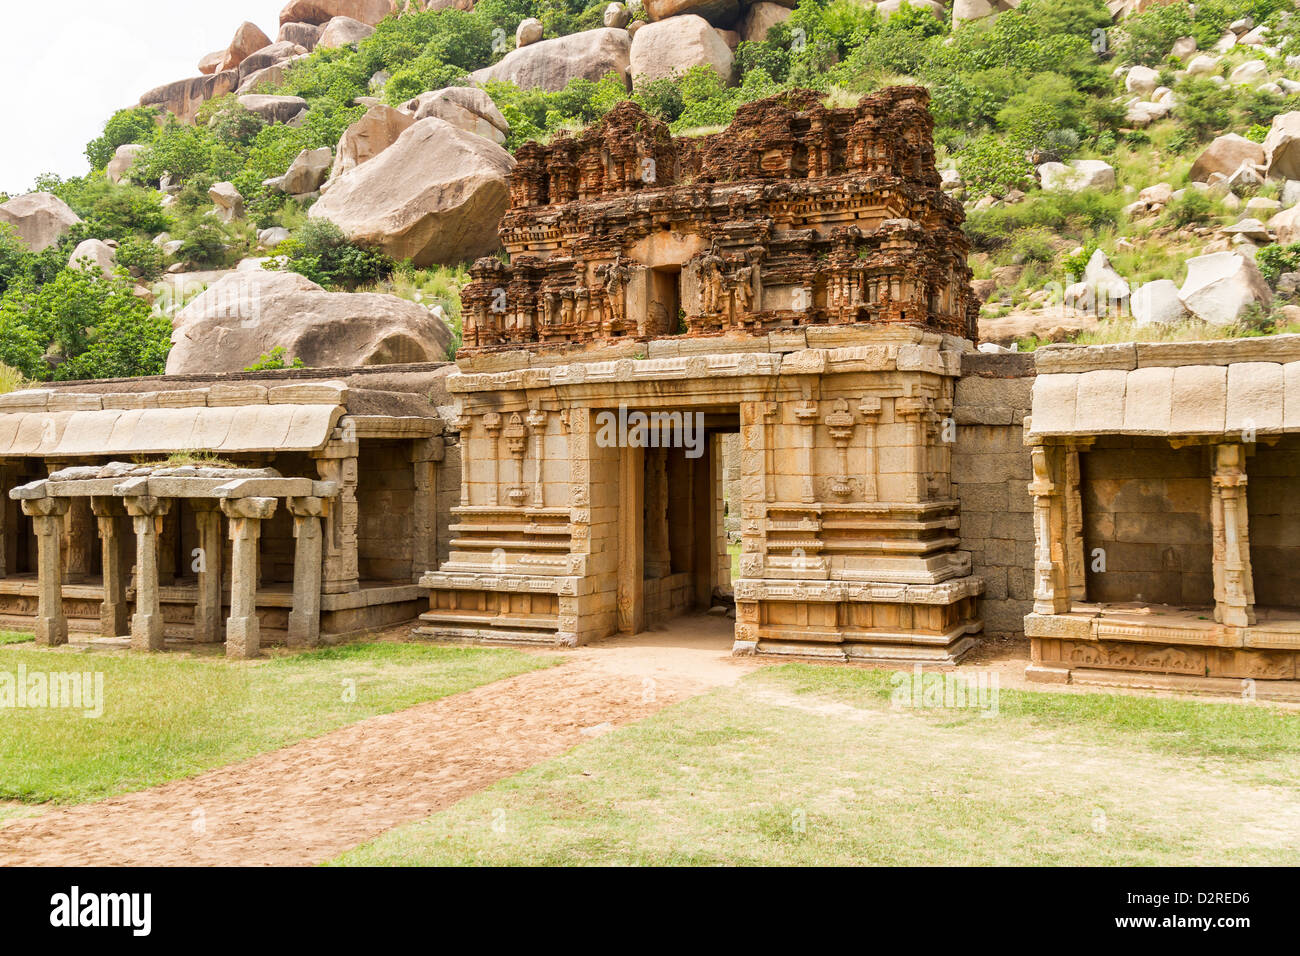 También conocido como el Templo de Tiruvengalanatha Achyutaraya Temple está situado a los pies de la colina de Matang, Hampi, India Foto de stock